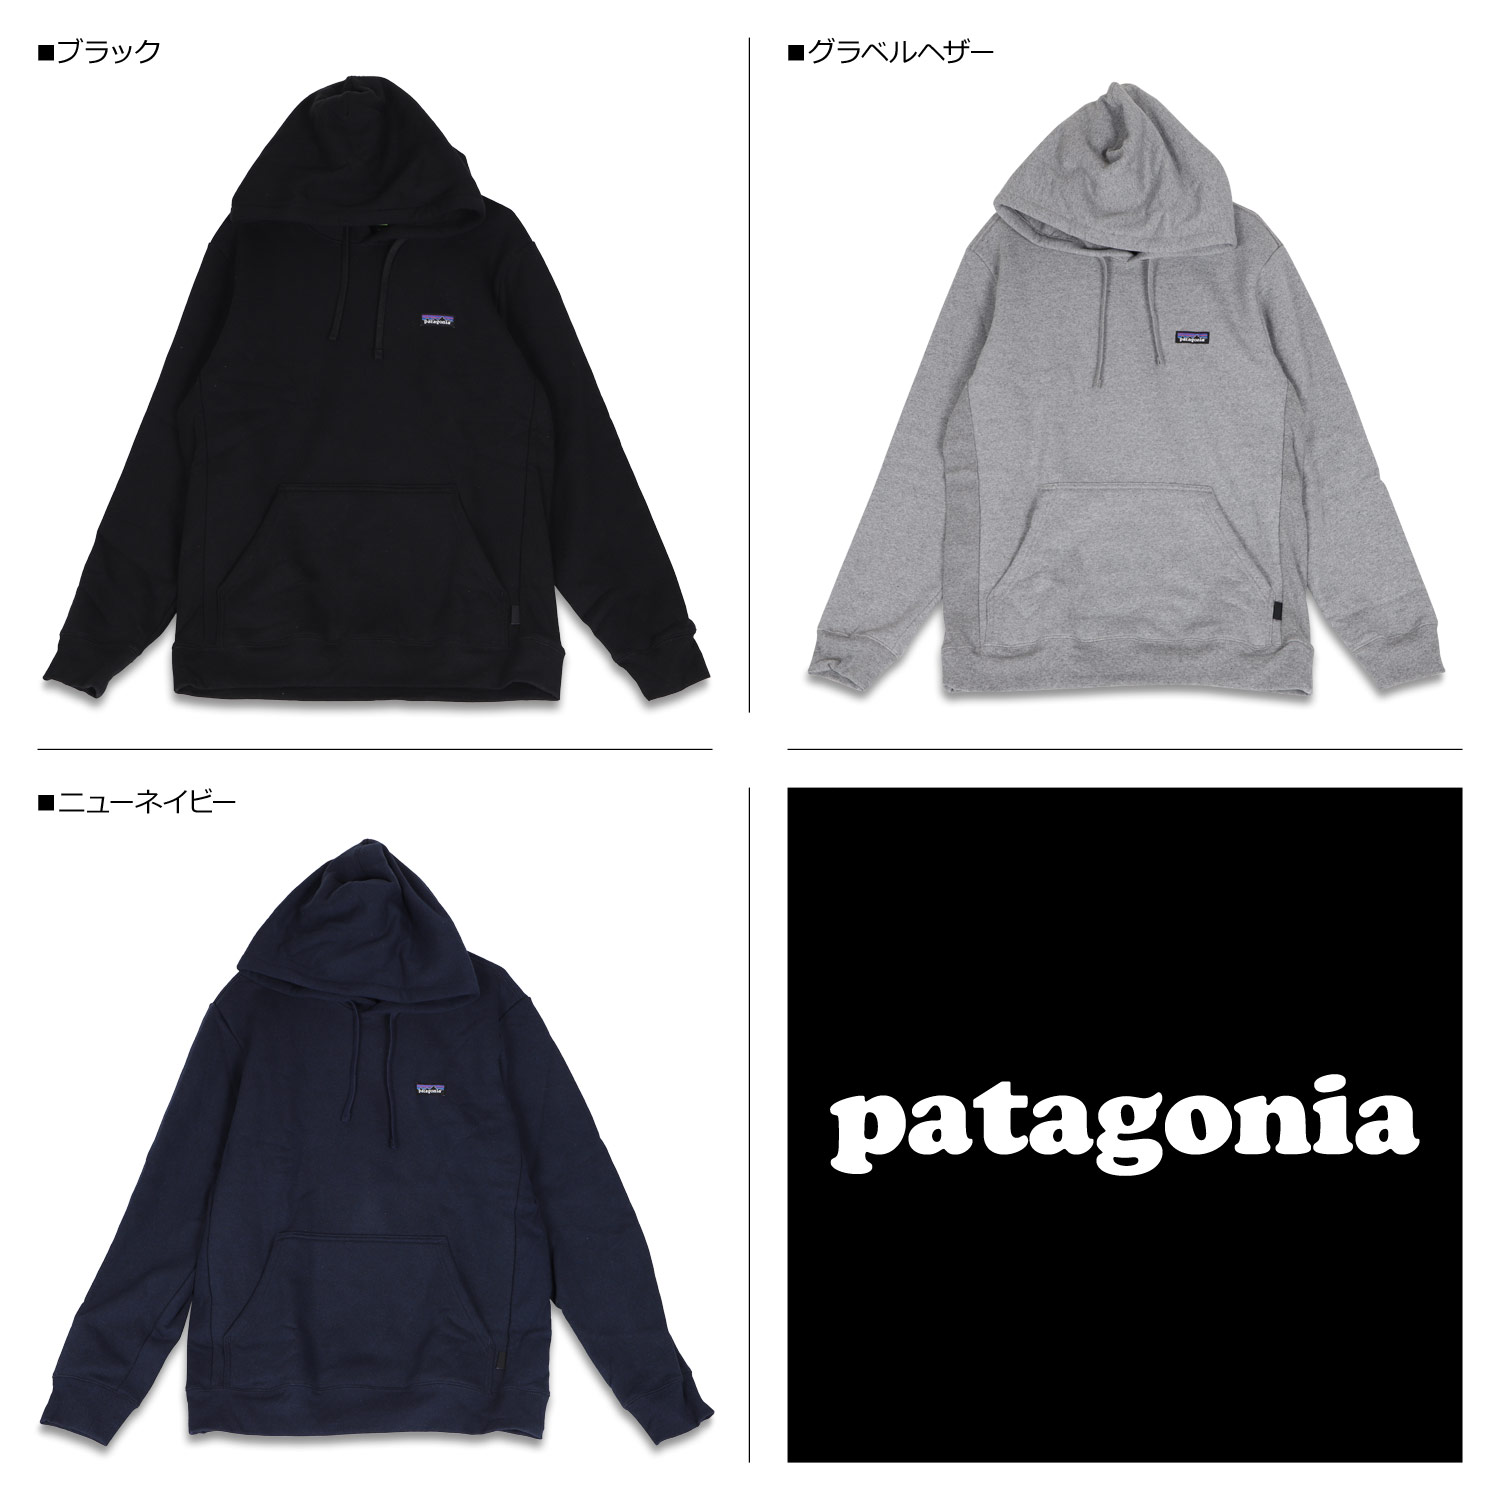 Patagonia P 6 Label プルオーバー Hoody パタゴニア スウェット Uprisal パーカー